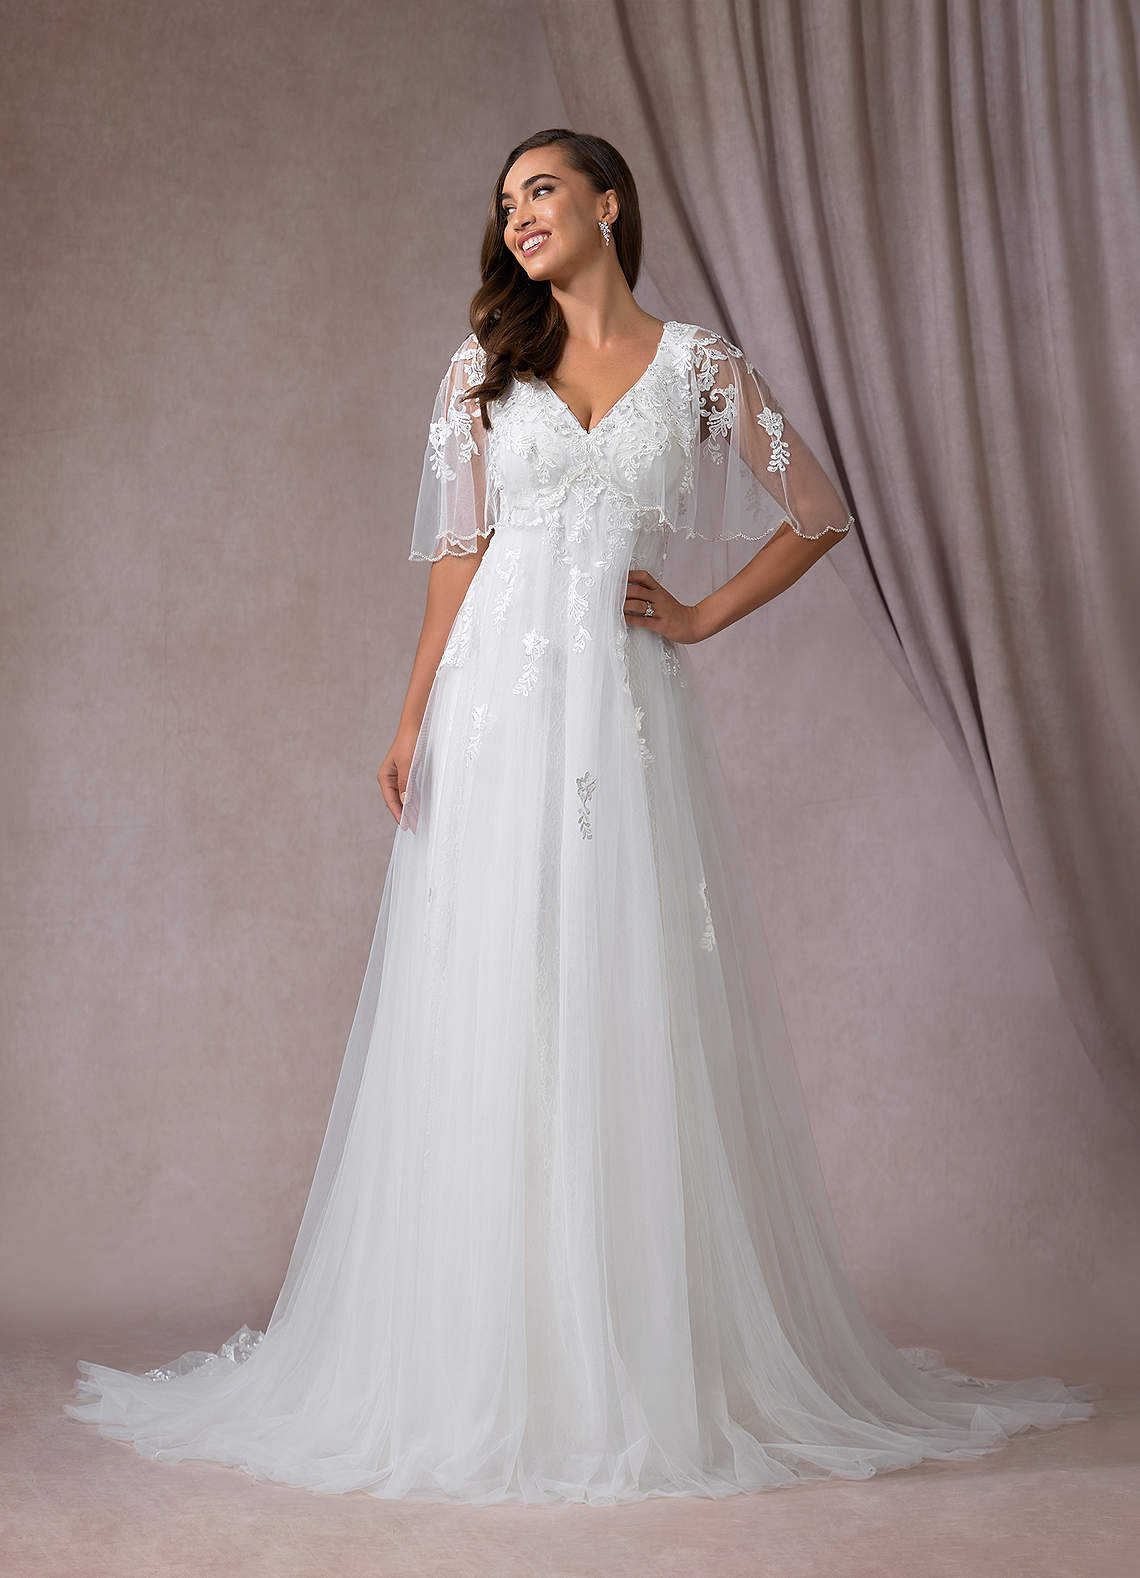 Diamond White Azazie Renesmee Wedding Dress Wedding Dresses | Azazie